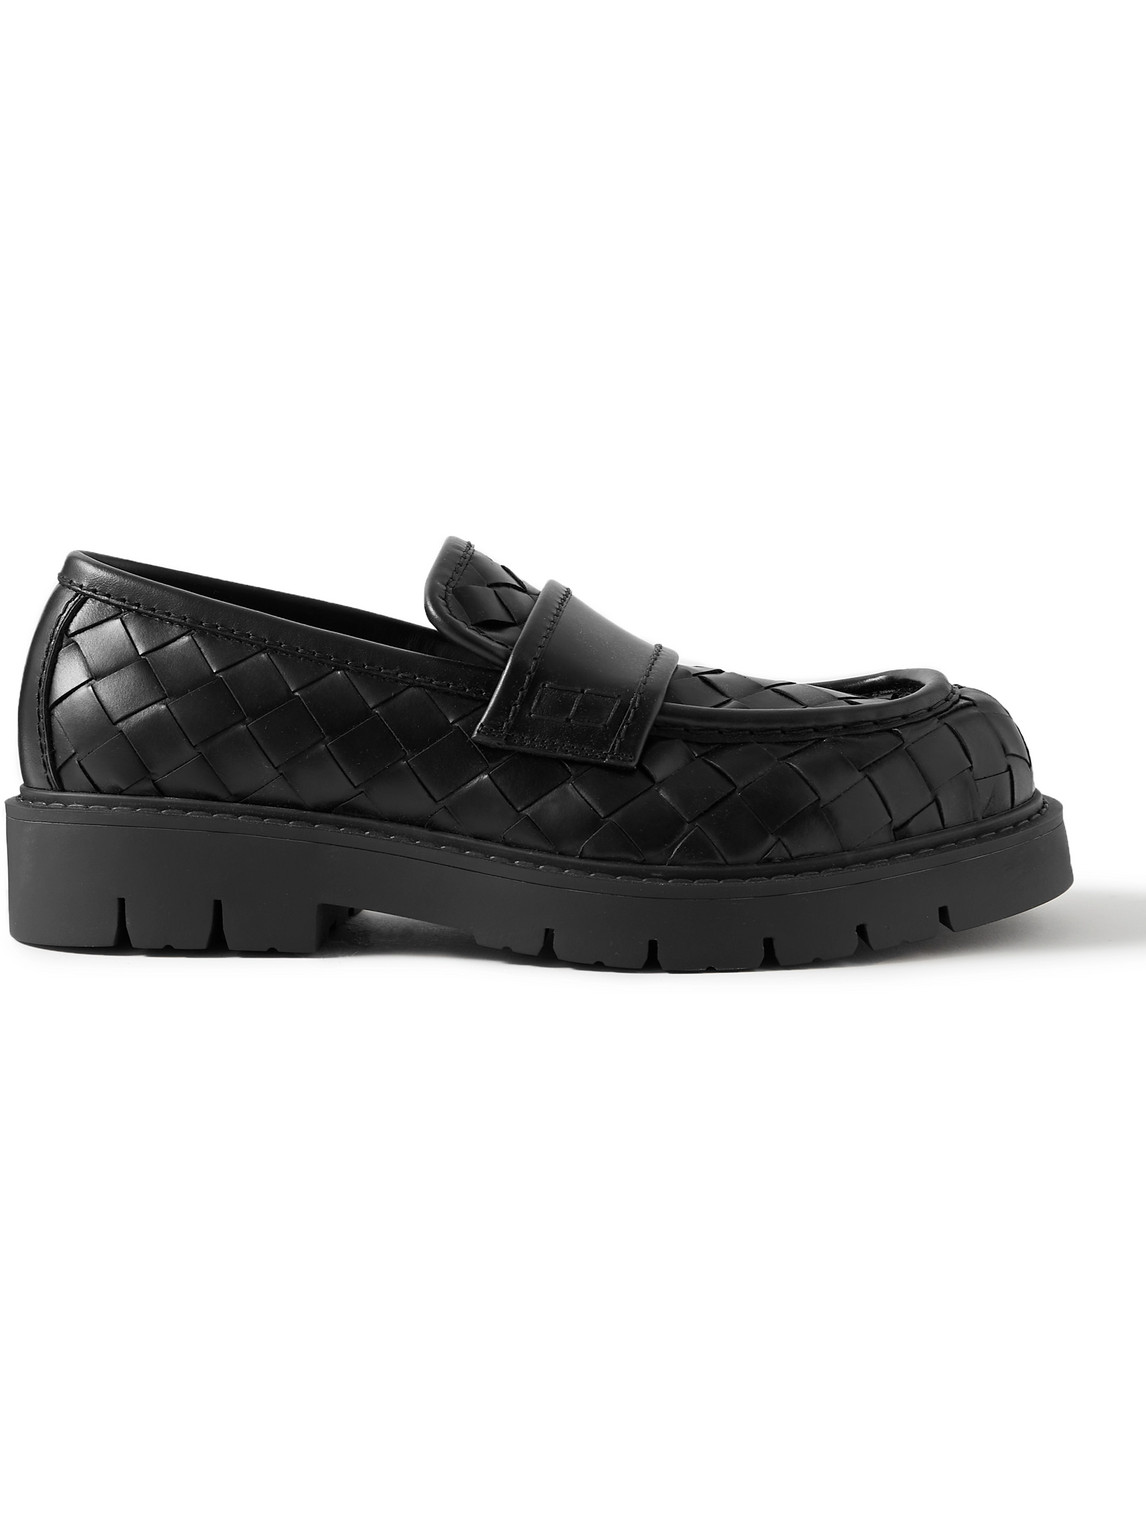 Bottega Veneta - Haddock Intrecciato Leather Loafers - Men - Black - EU 40 von Bottega Veneta